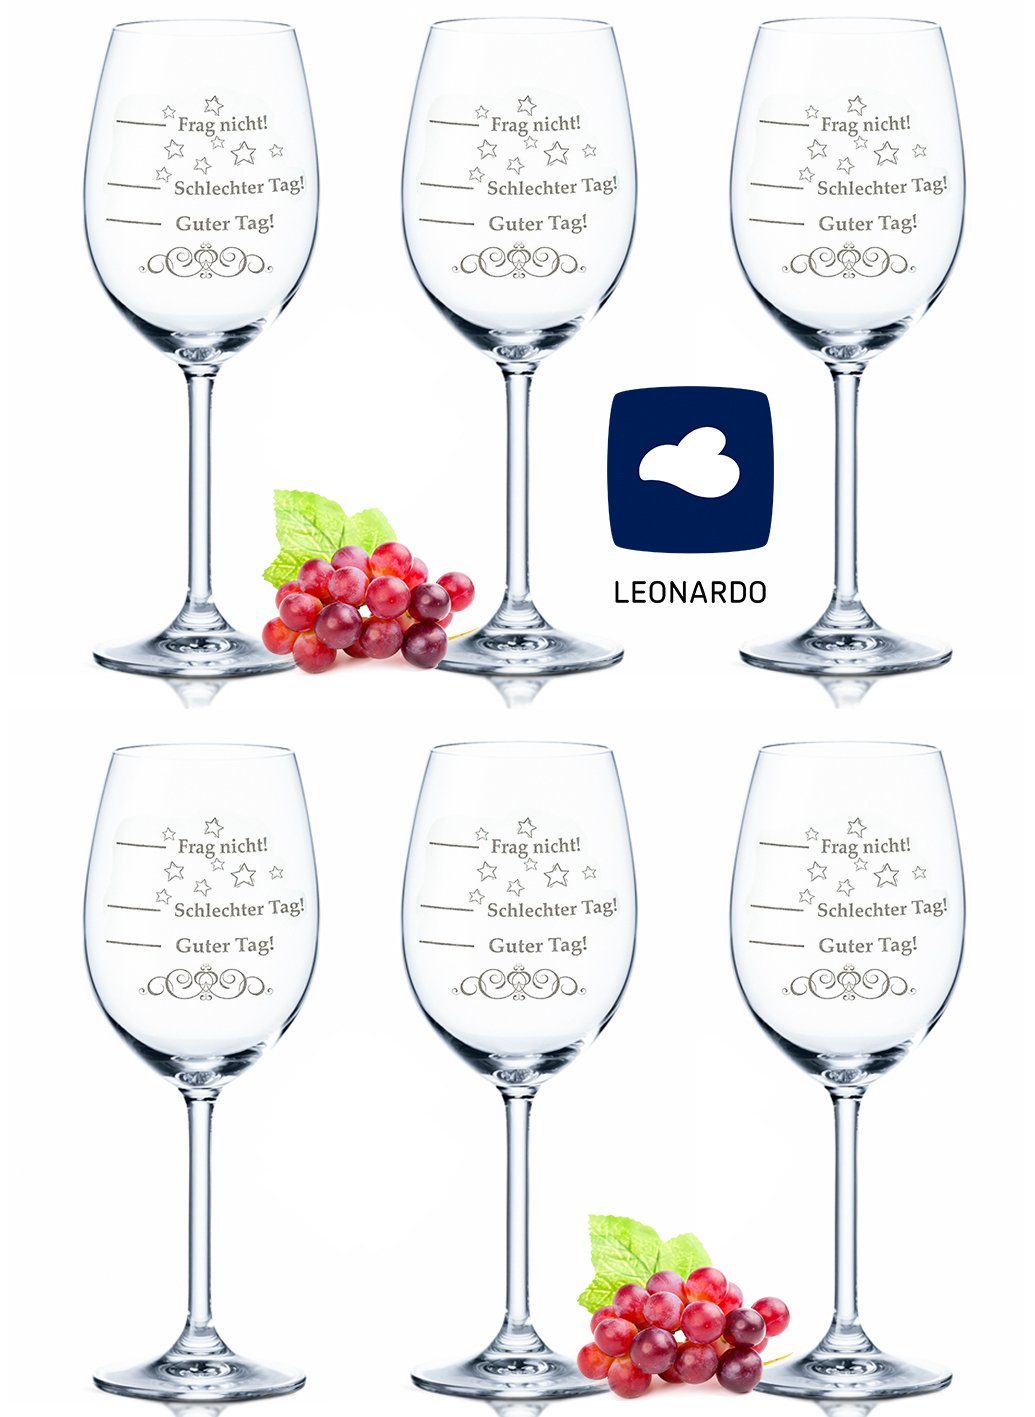 GRAVURZEILE Rotweinglas »Leonardo Weingläser - Schlechter Tag, Guter Tag -  Frag nicht! im 6er Set - Stimmungsglas - Rotweingläser & Weißweingläser -  Geiles Geschenk - Party Set«, Glas online kaufen | OTTO